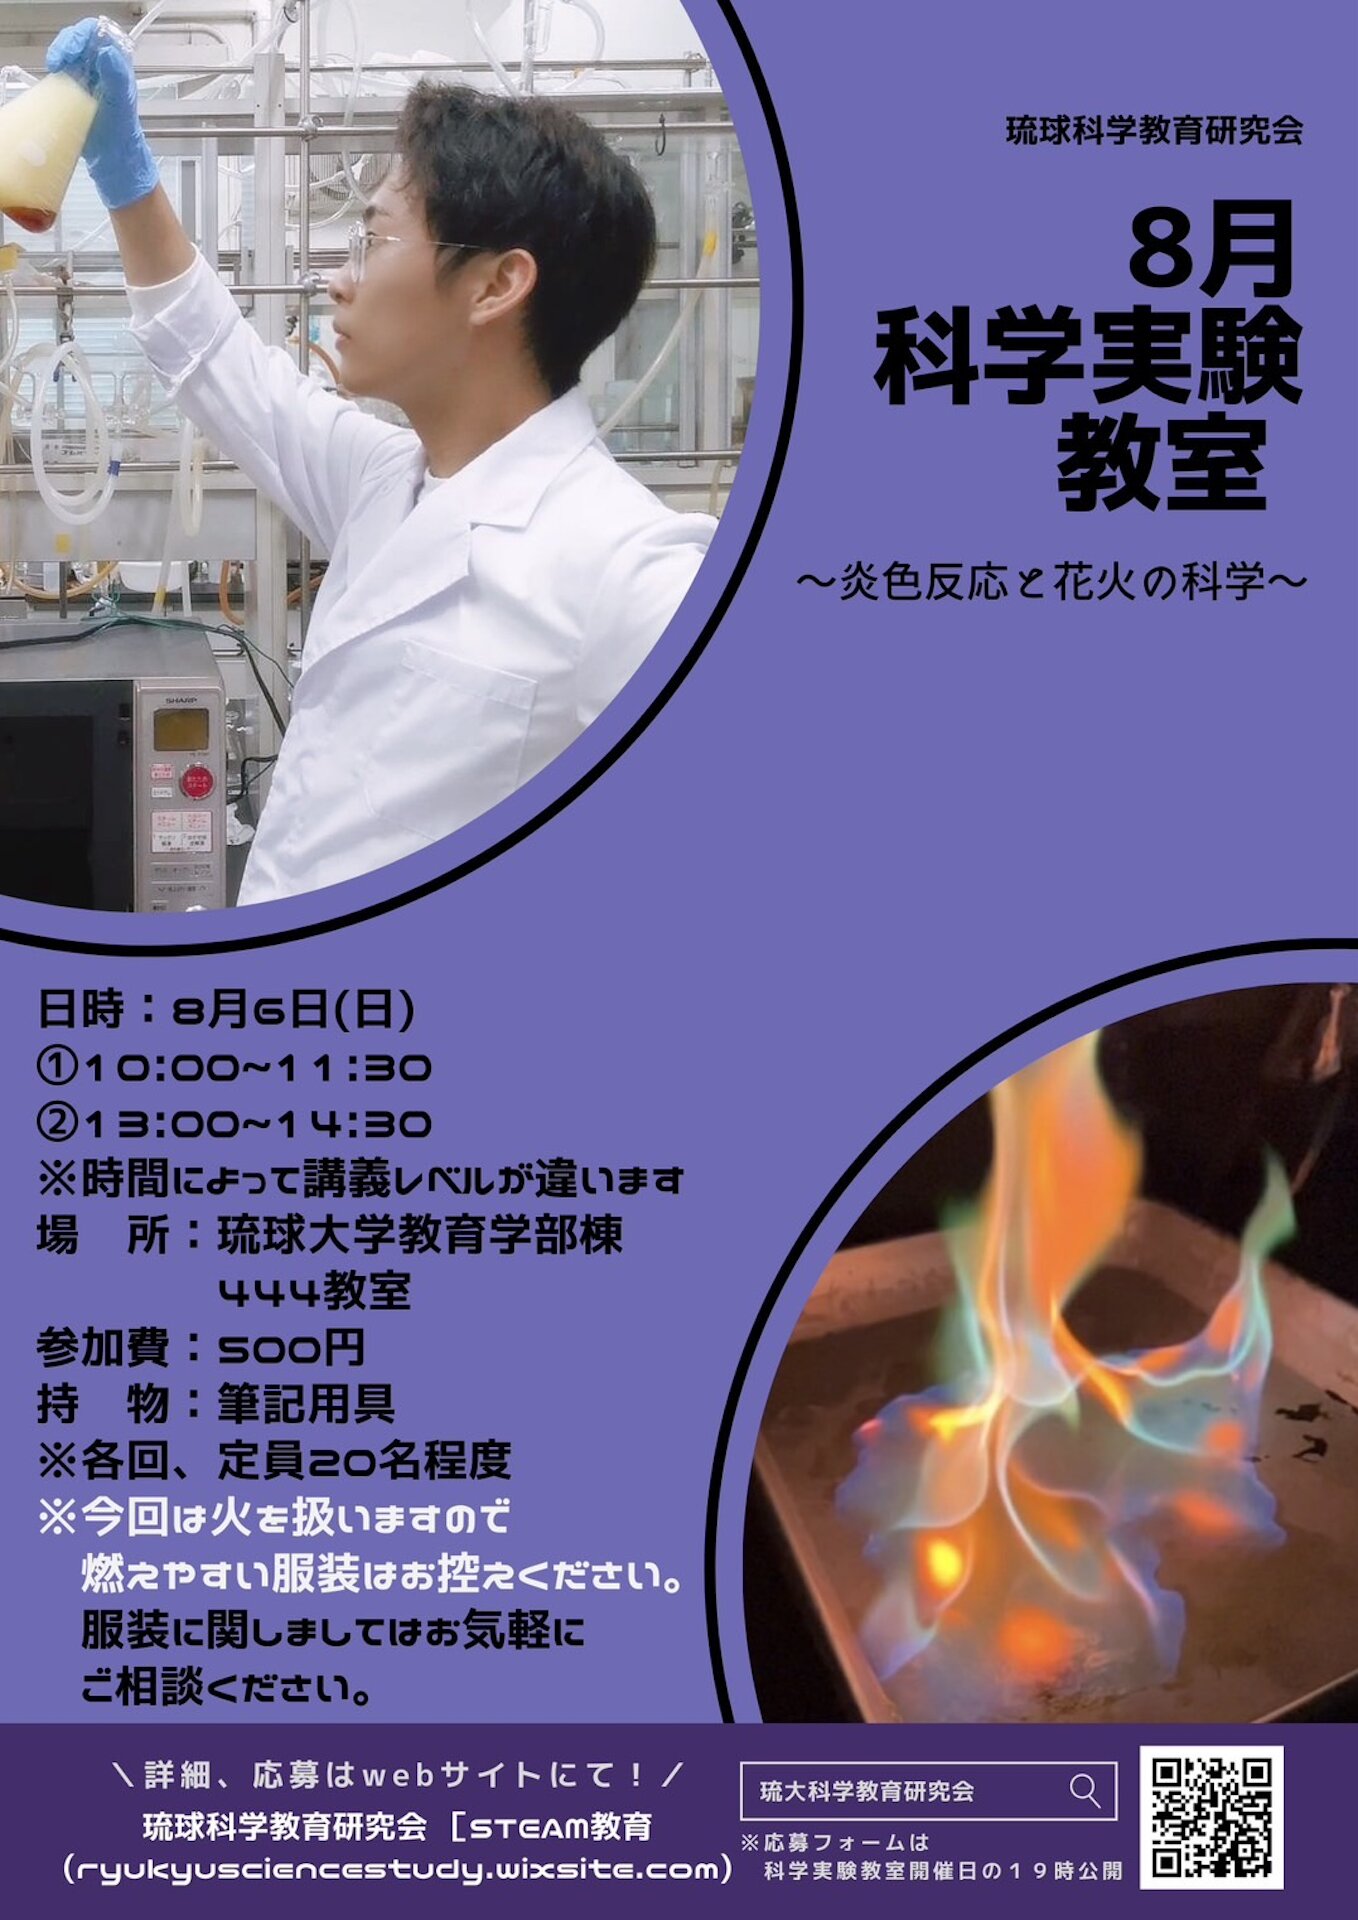 『8月 炎色反応と花火の科学』梅田先生より提供頂いた参考資料